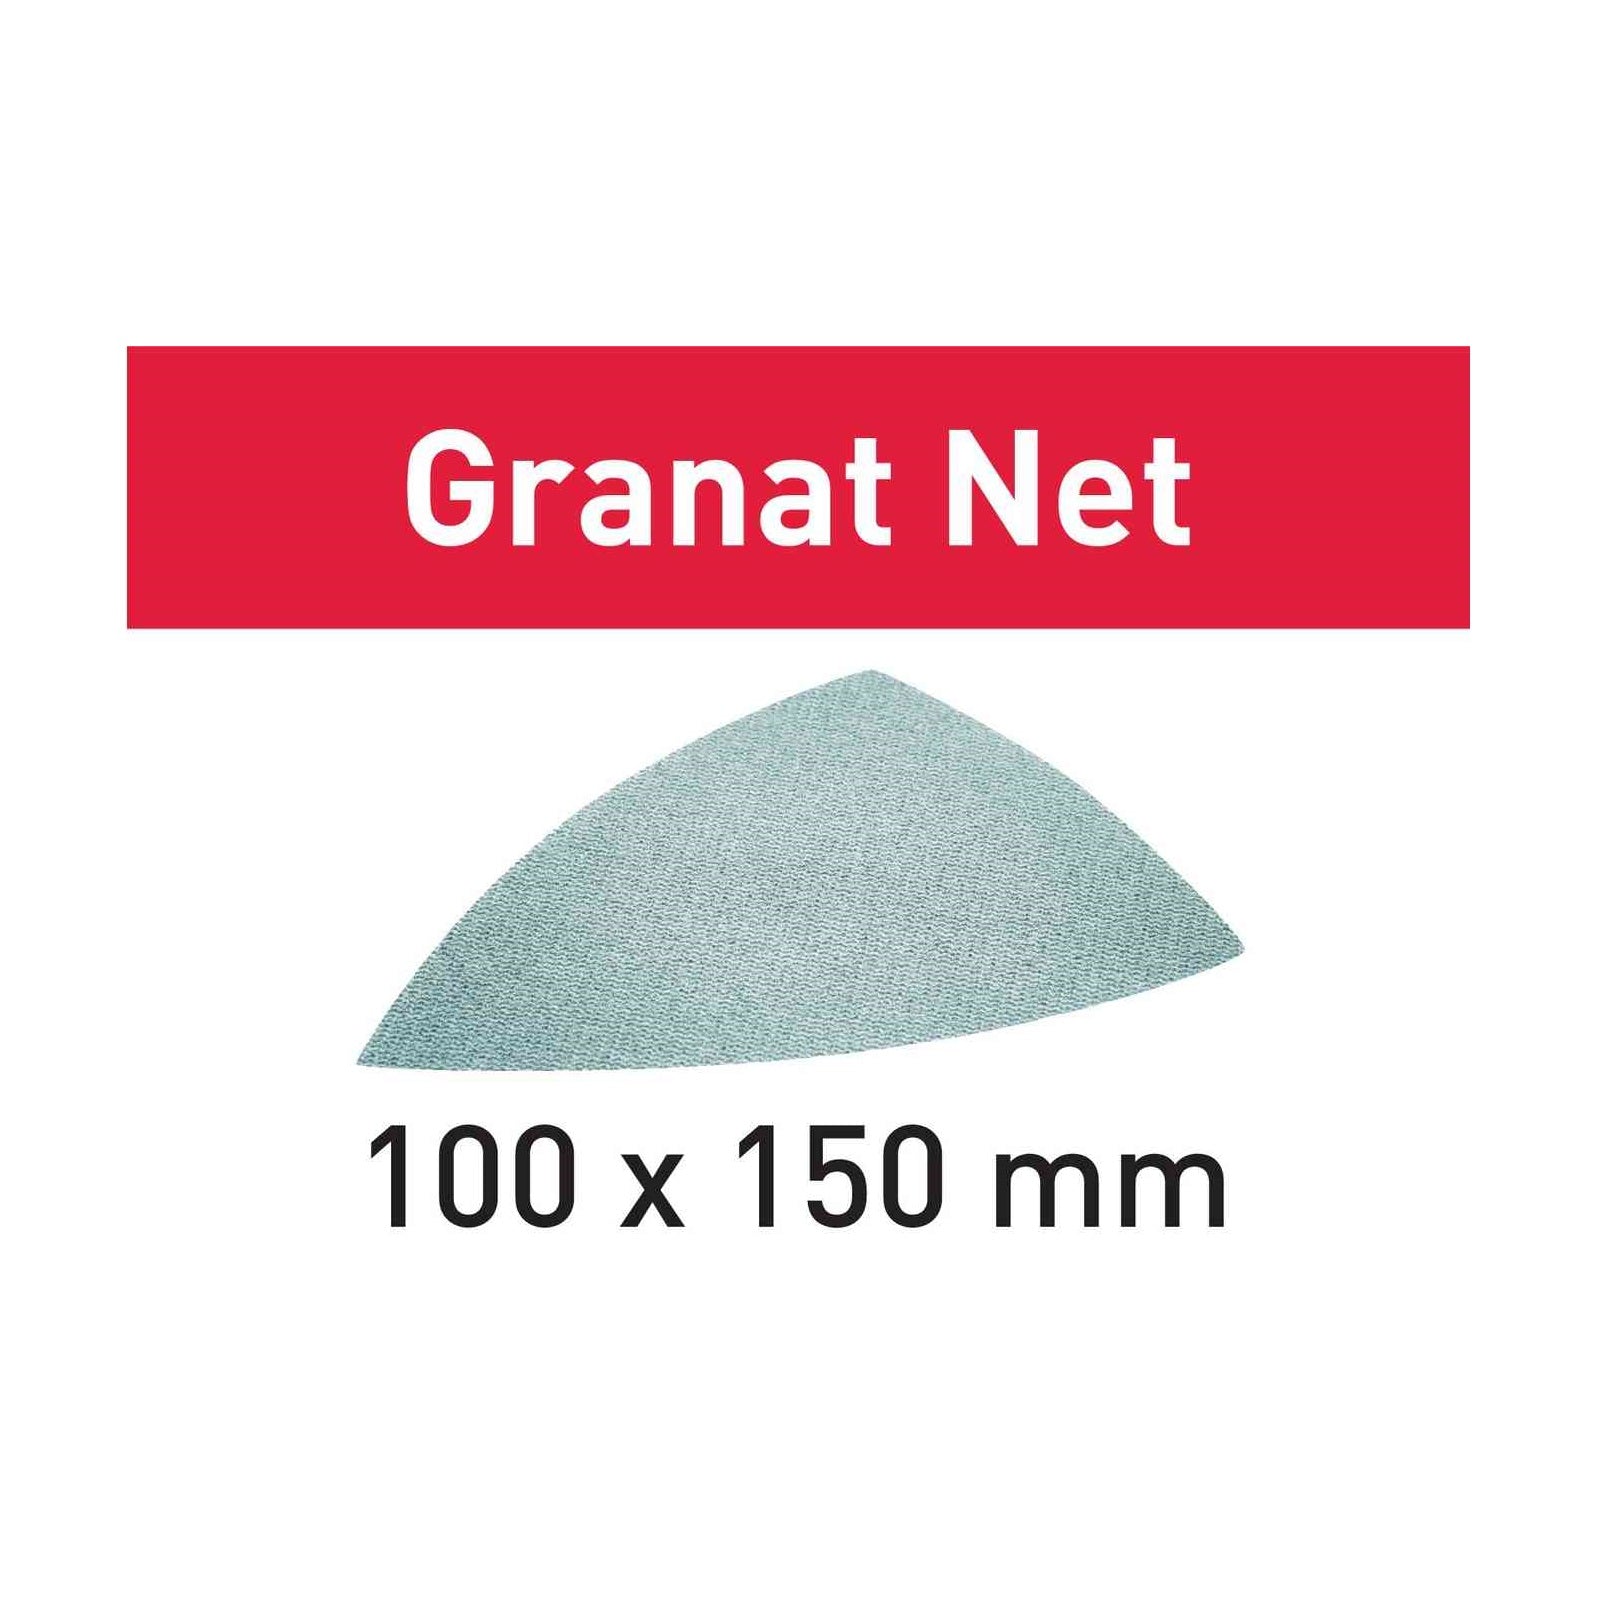 Festool Granat Net Delta Sandpaper